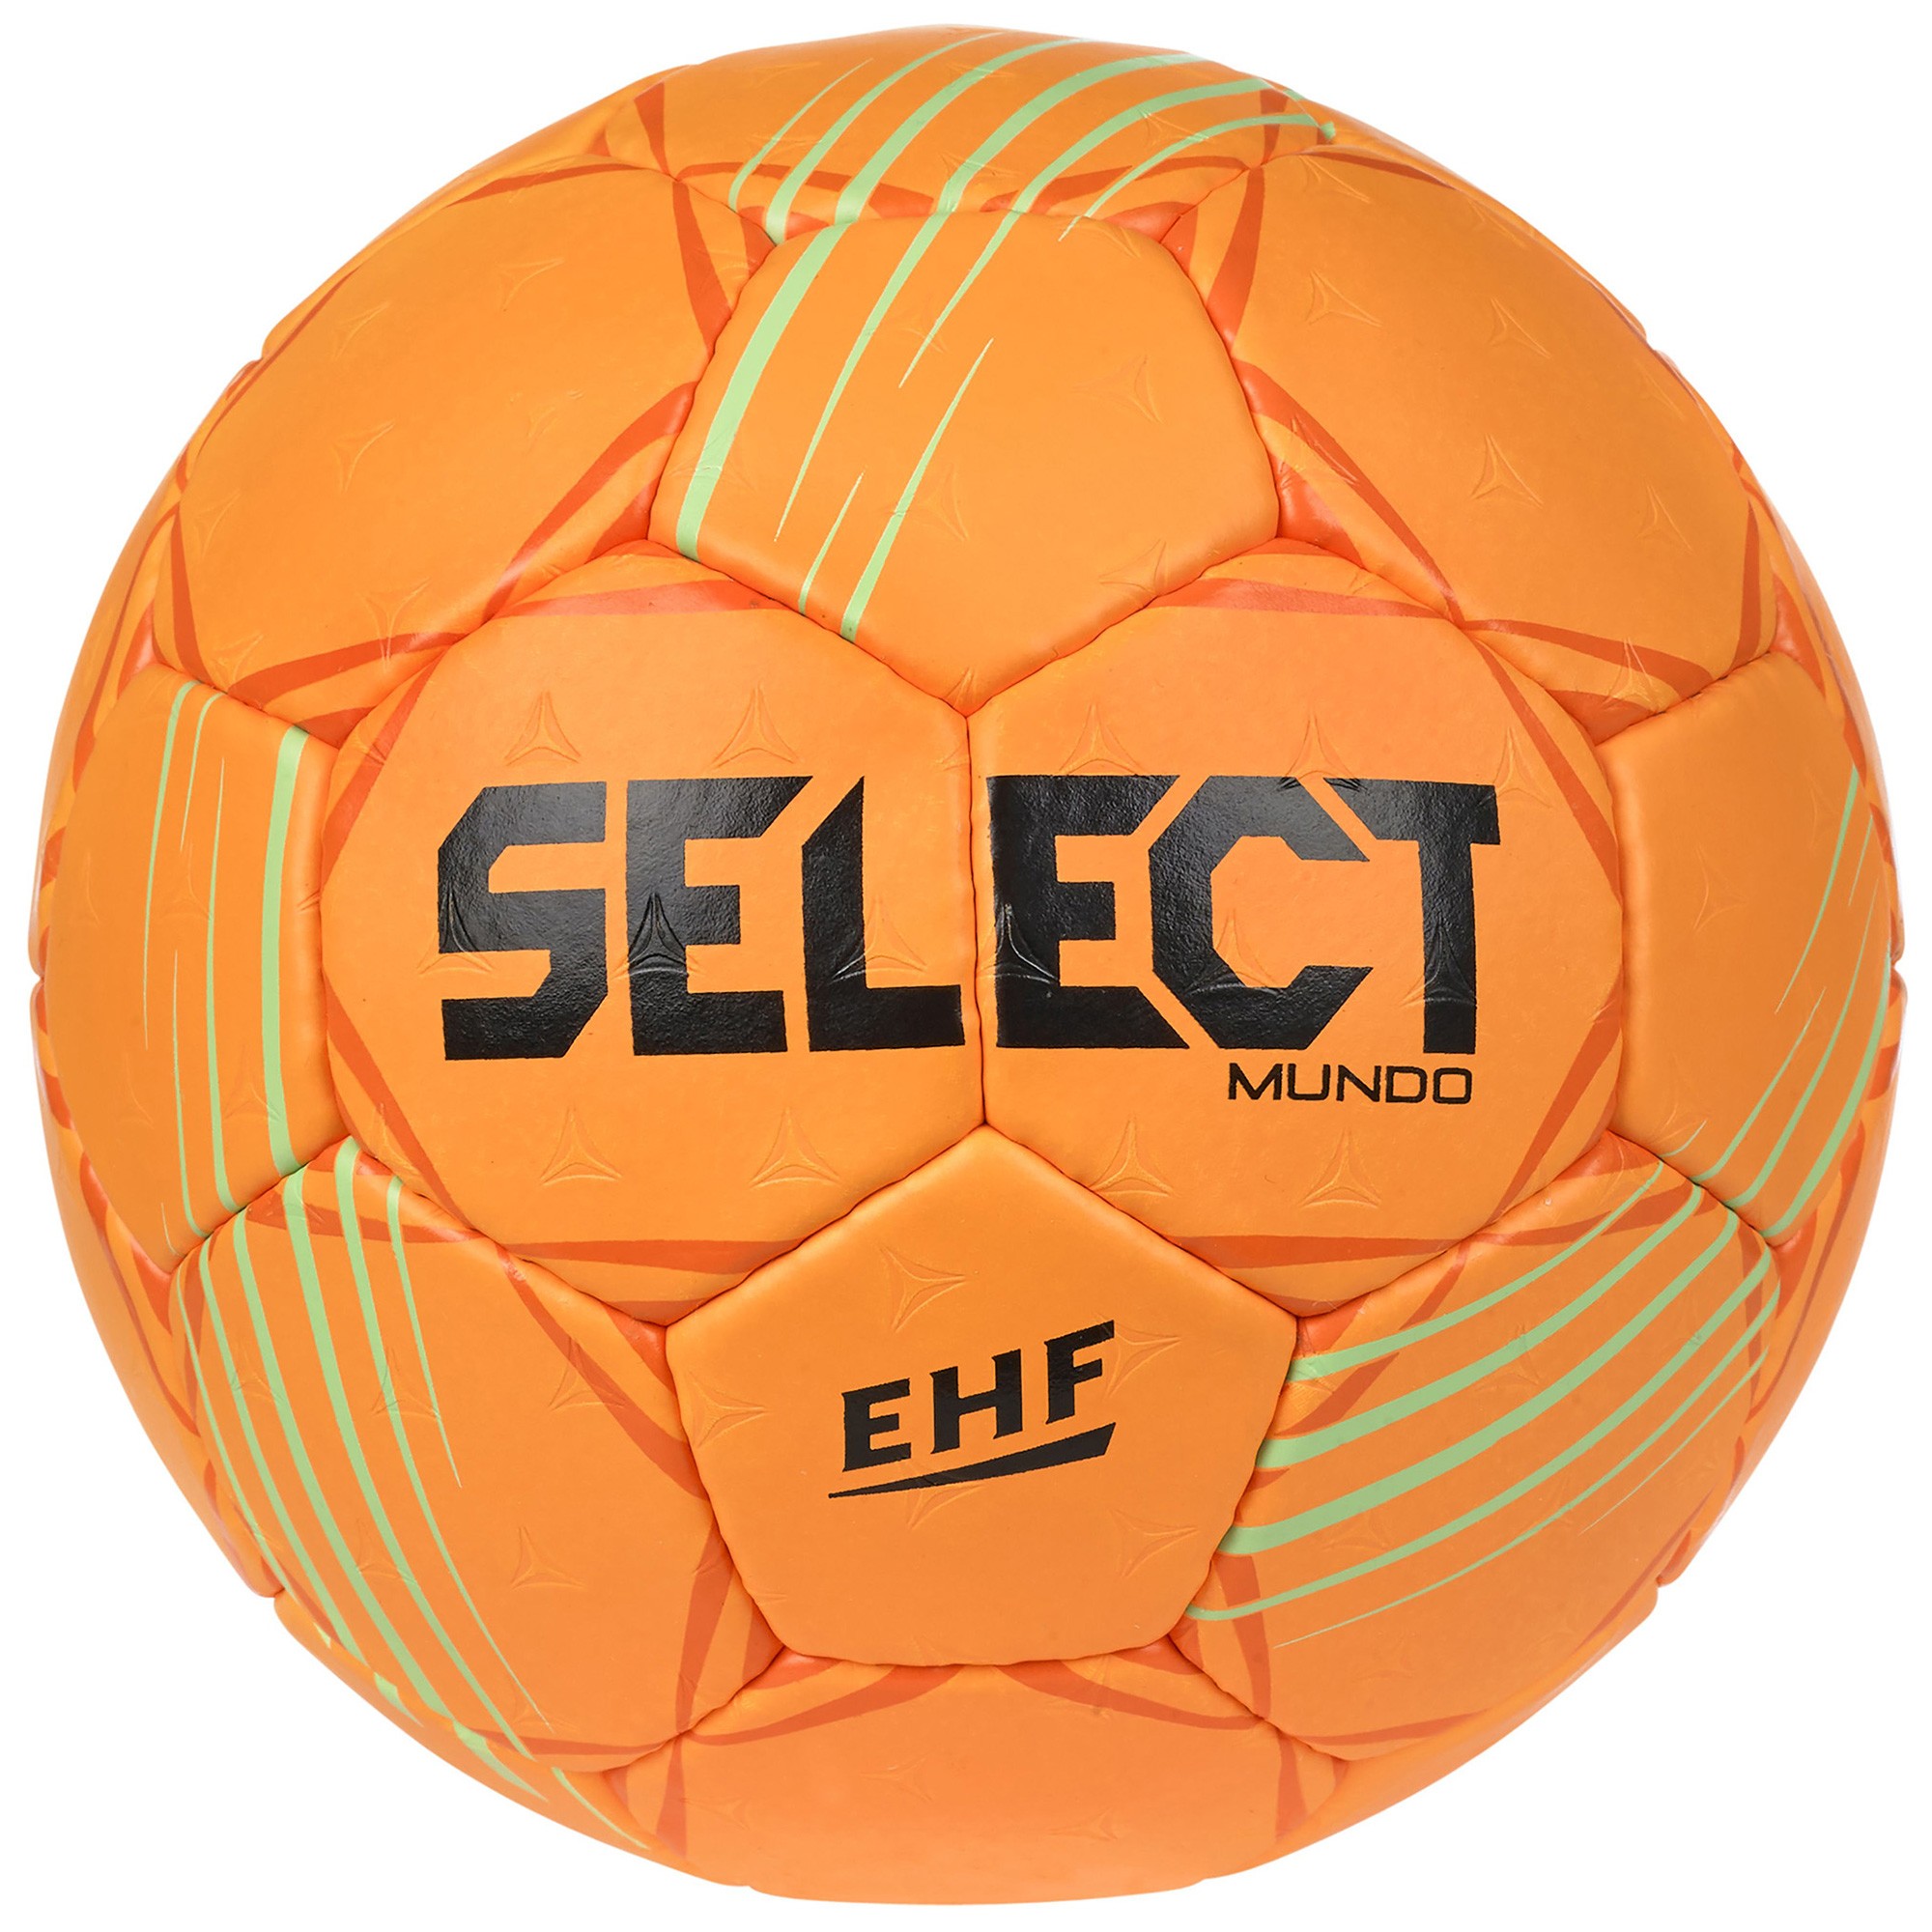 https://www.integral-sport.fr/68196/ballon-mundo-v22-orange.jpg